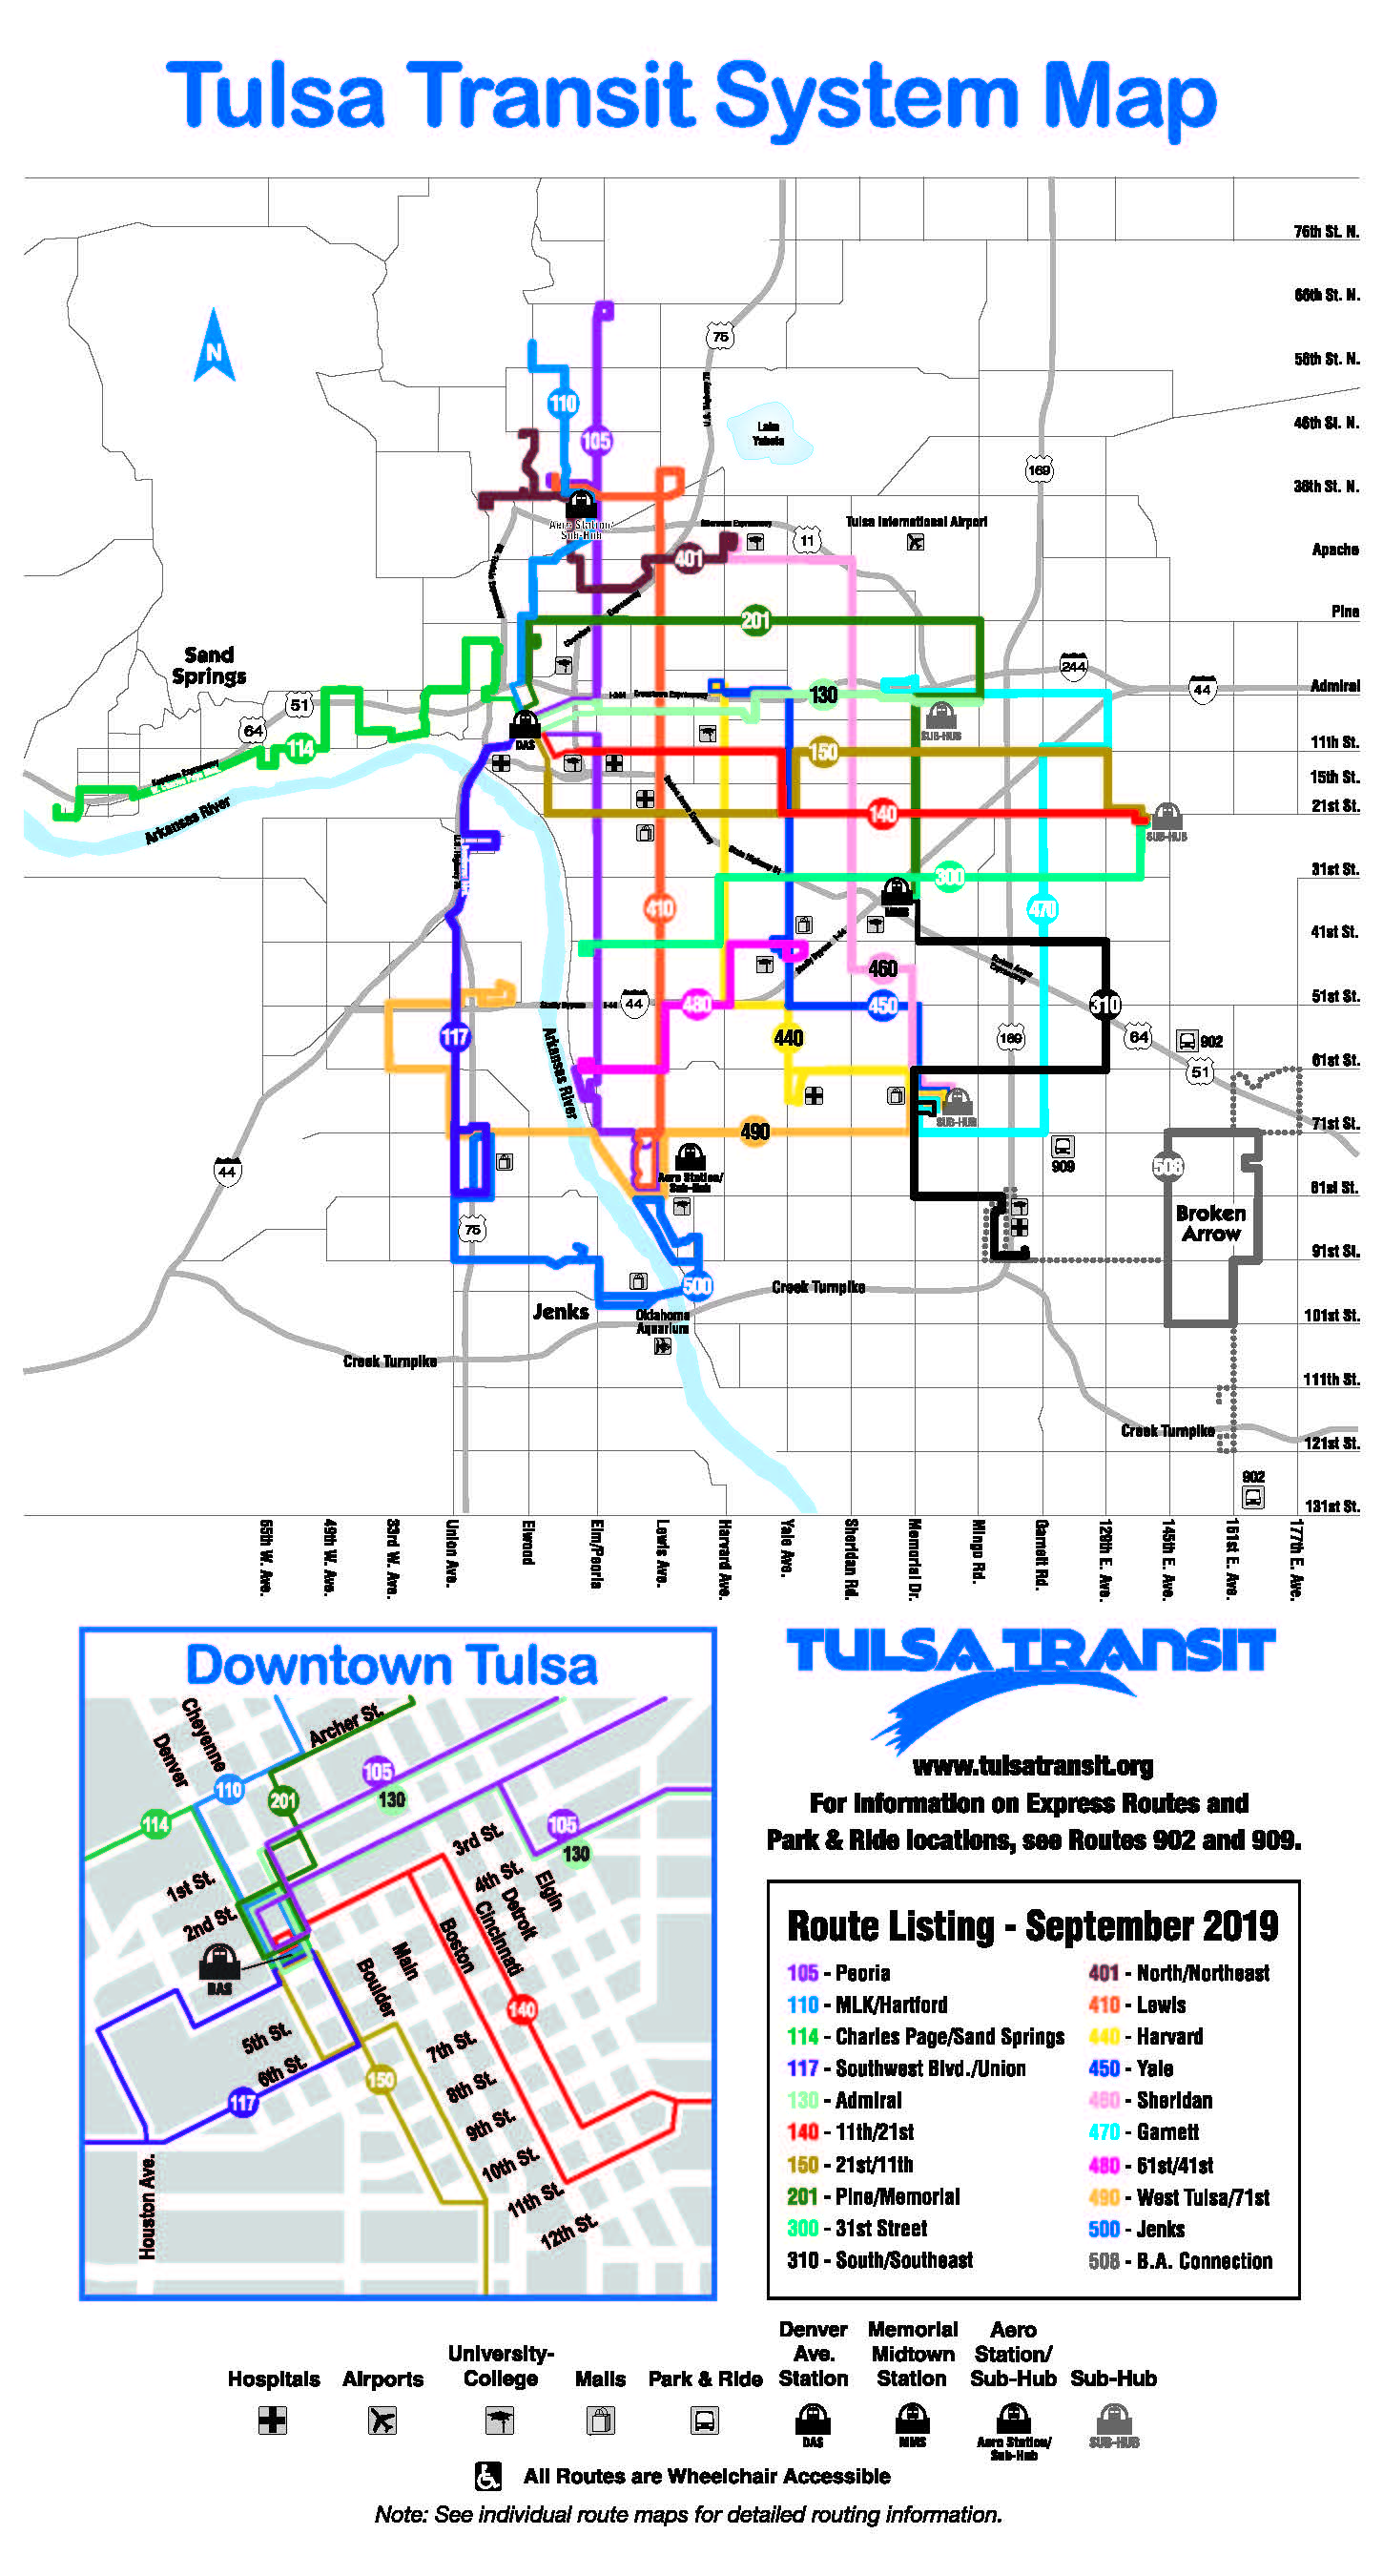 Tulsa Transit system map as of September 2019